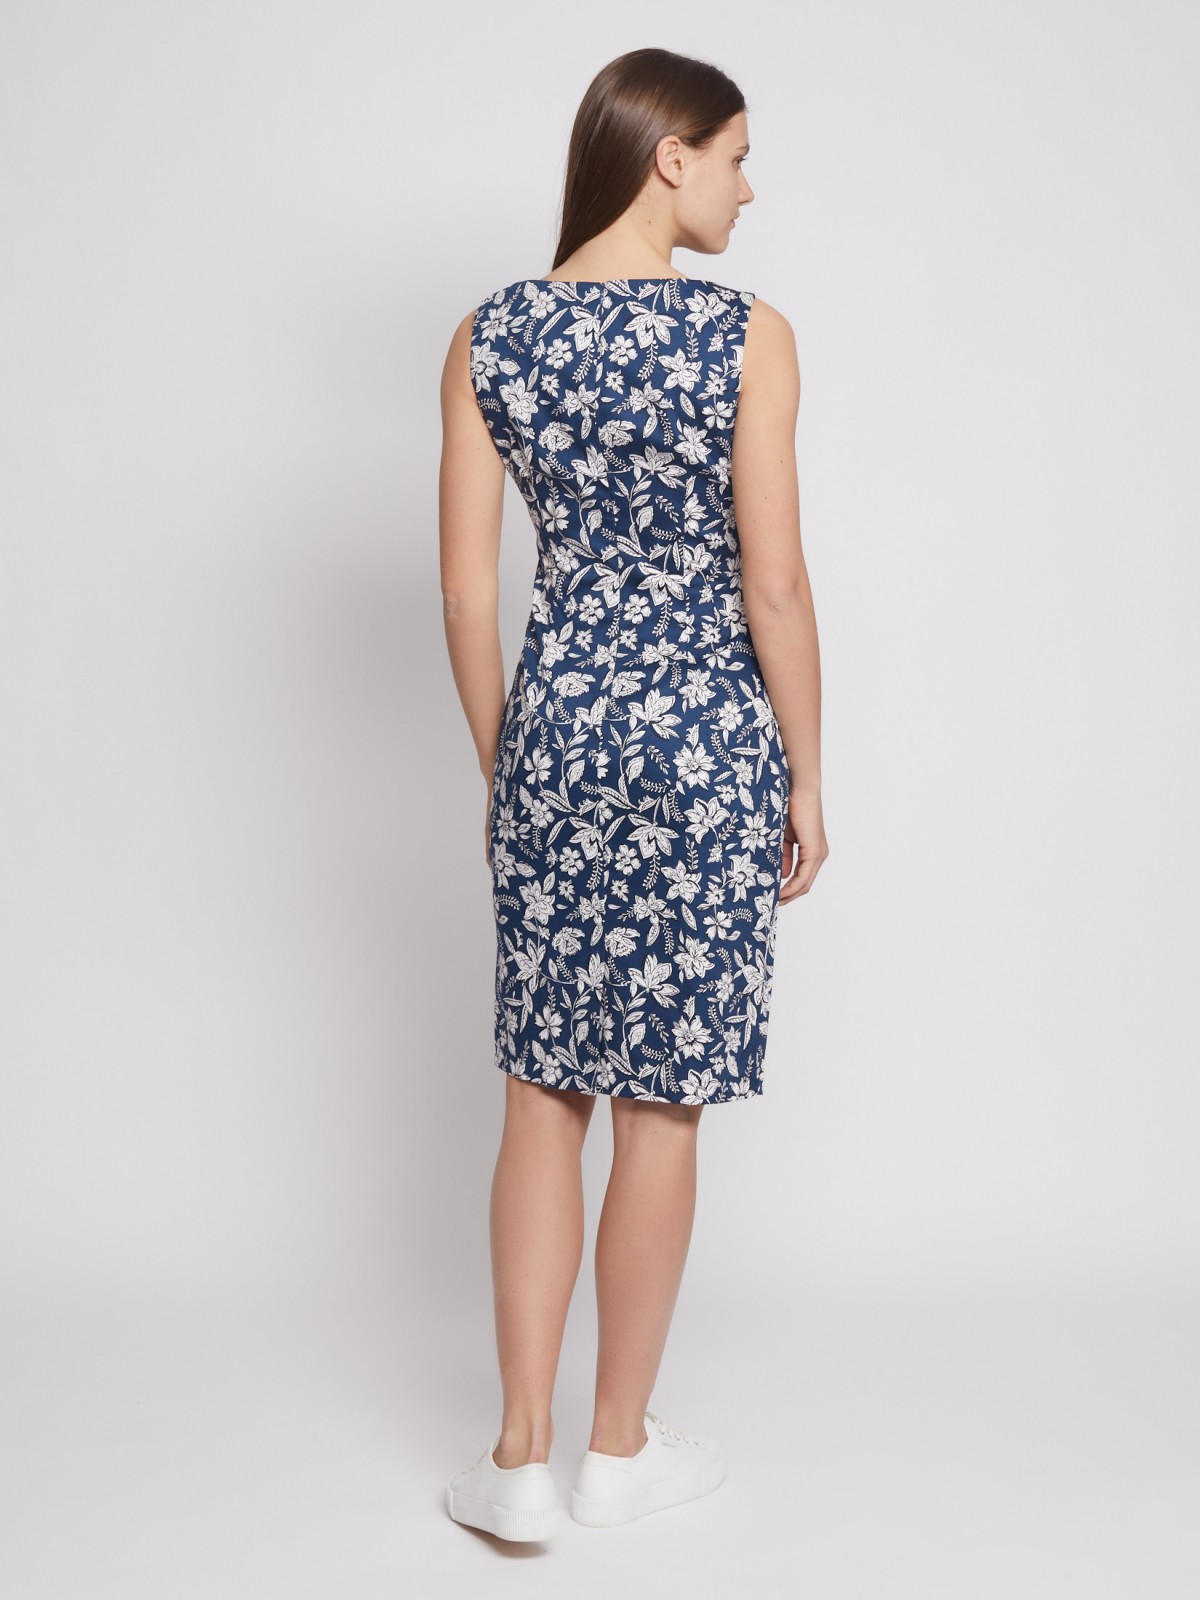 Принтованное платье-футляр без рукавов zolla 022248239082, цвет синий, размер XS - фото 3